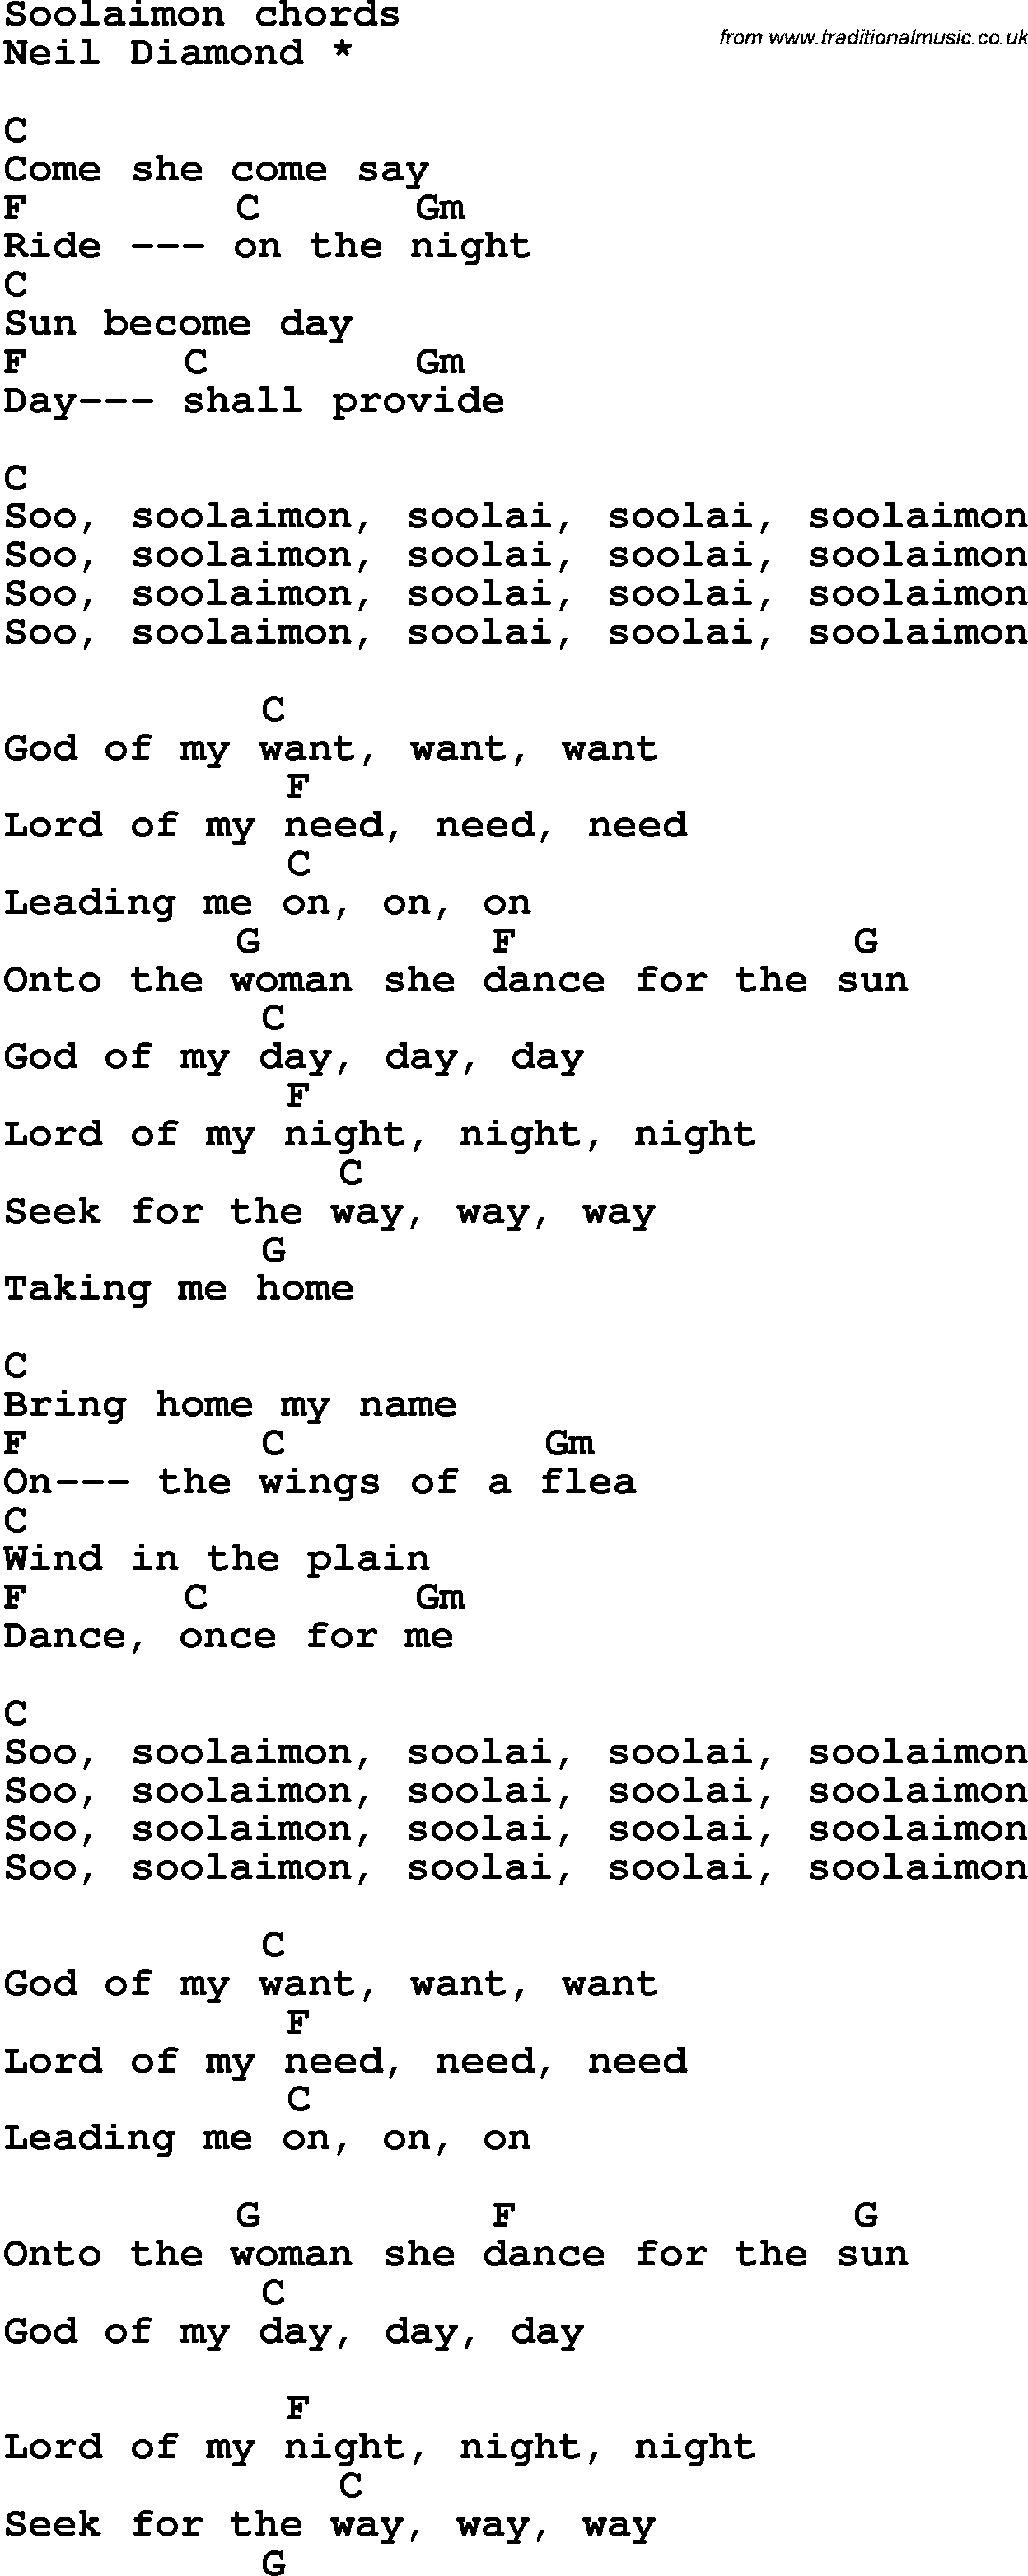 Song Lyrics with guitar chords for Soolaimon - Neil Diamond